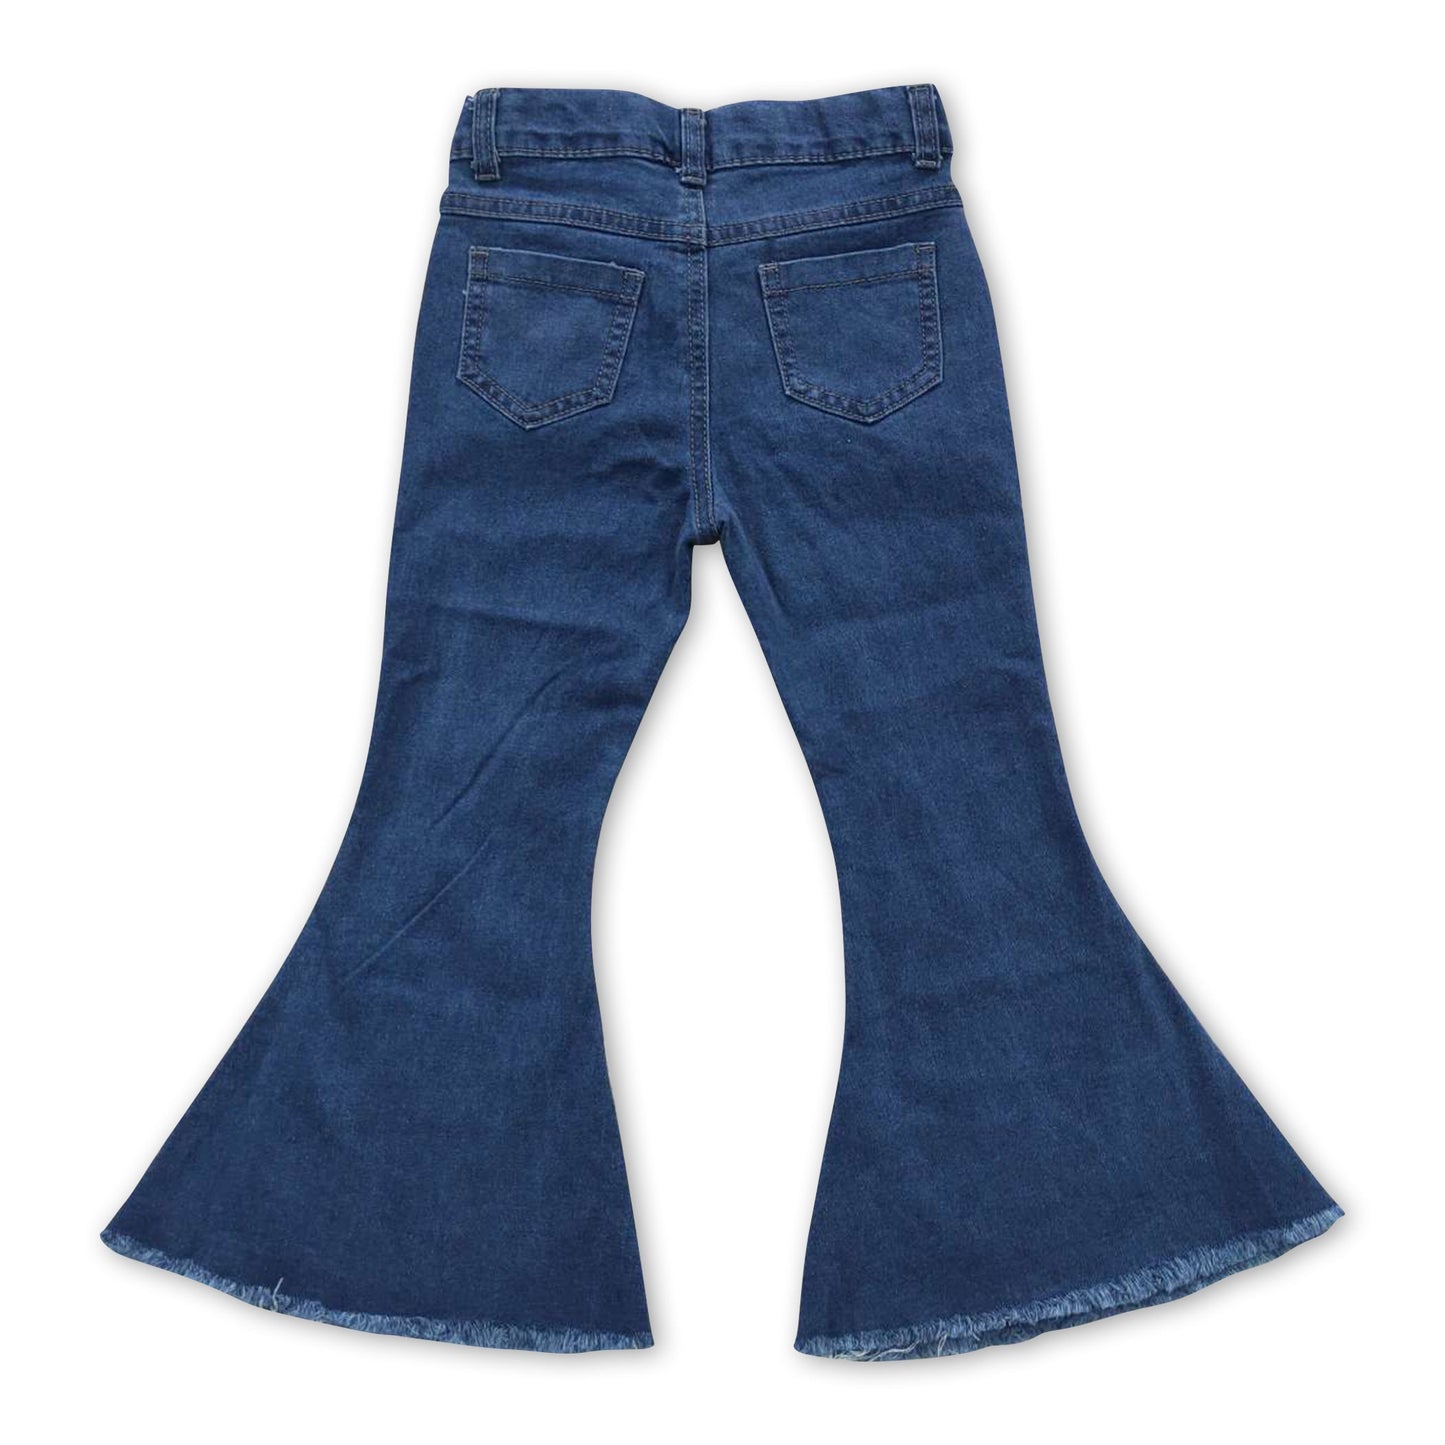 Washed blue pockets denim pants western kids girls jeans